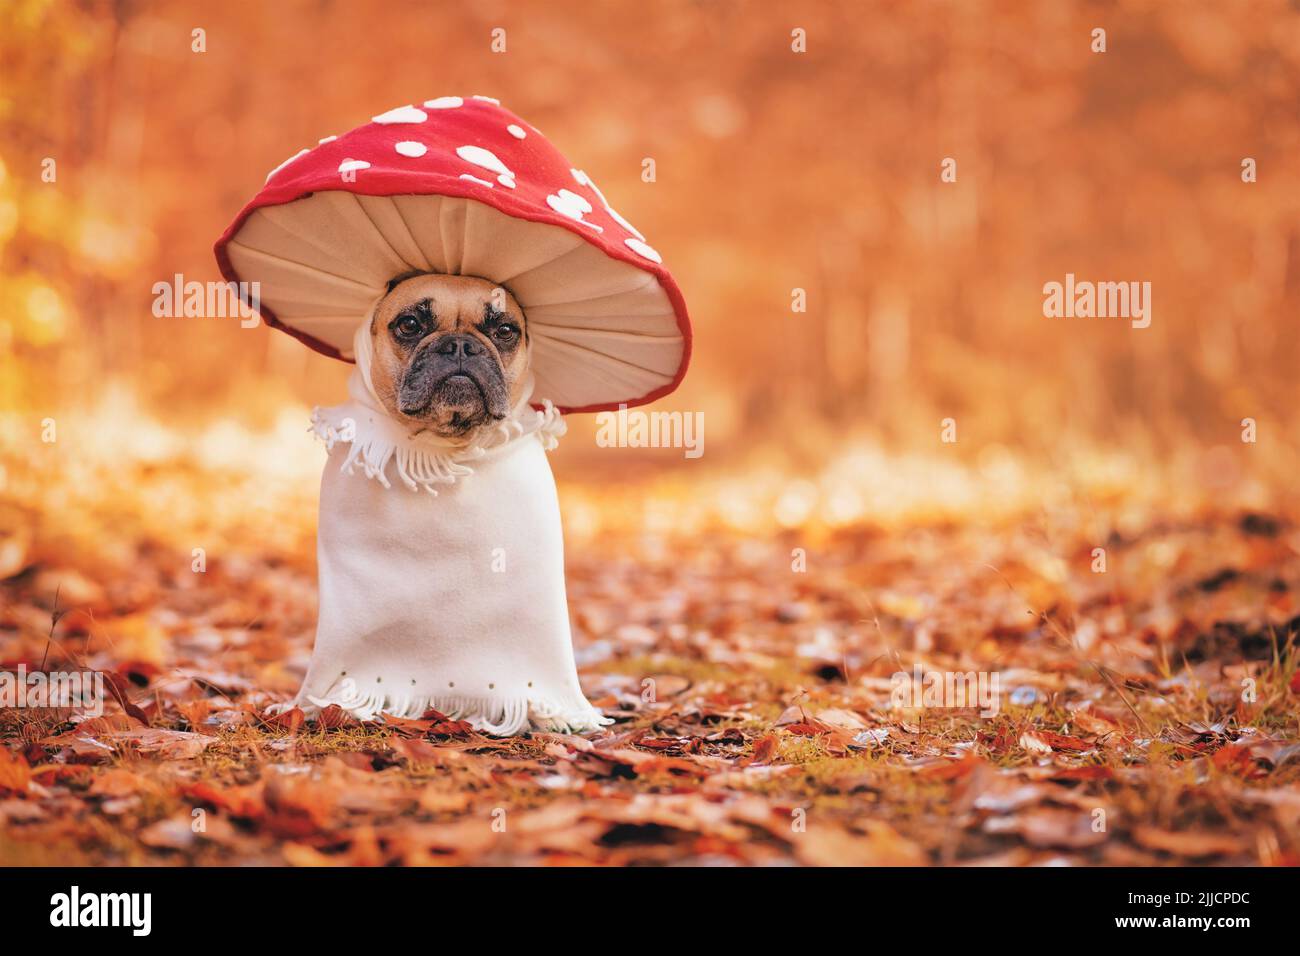 Divertido perro Bulldog francés en un traje único de setas agáricas de mosca de pie en el bosque de otoño naranja con espacio de copia Foto de stock